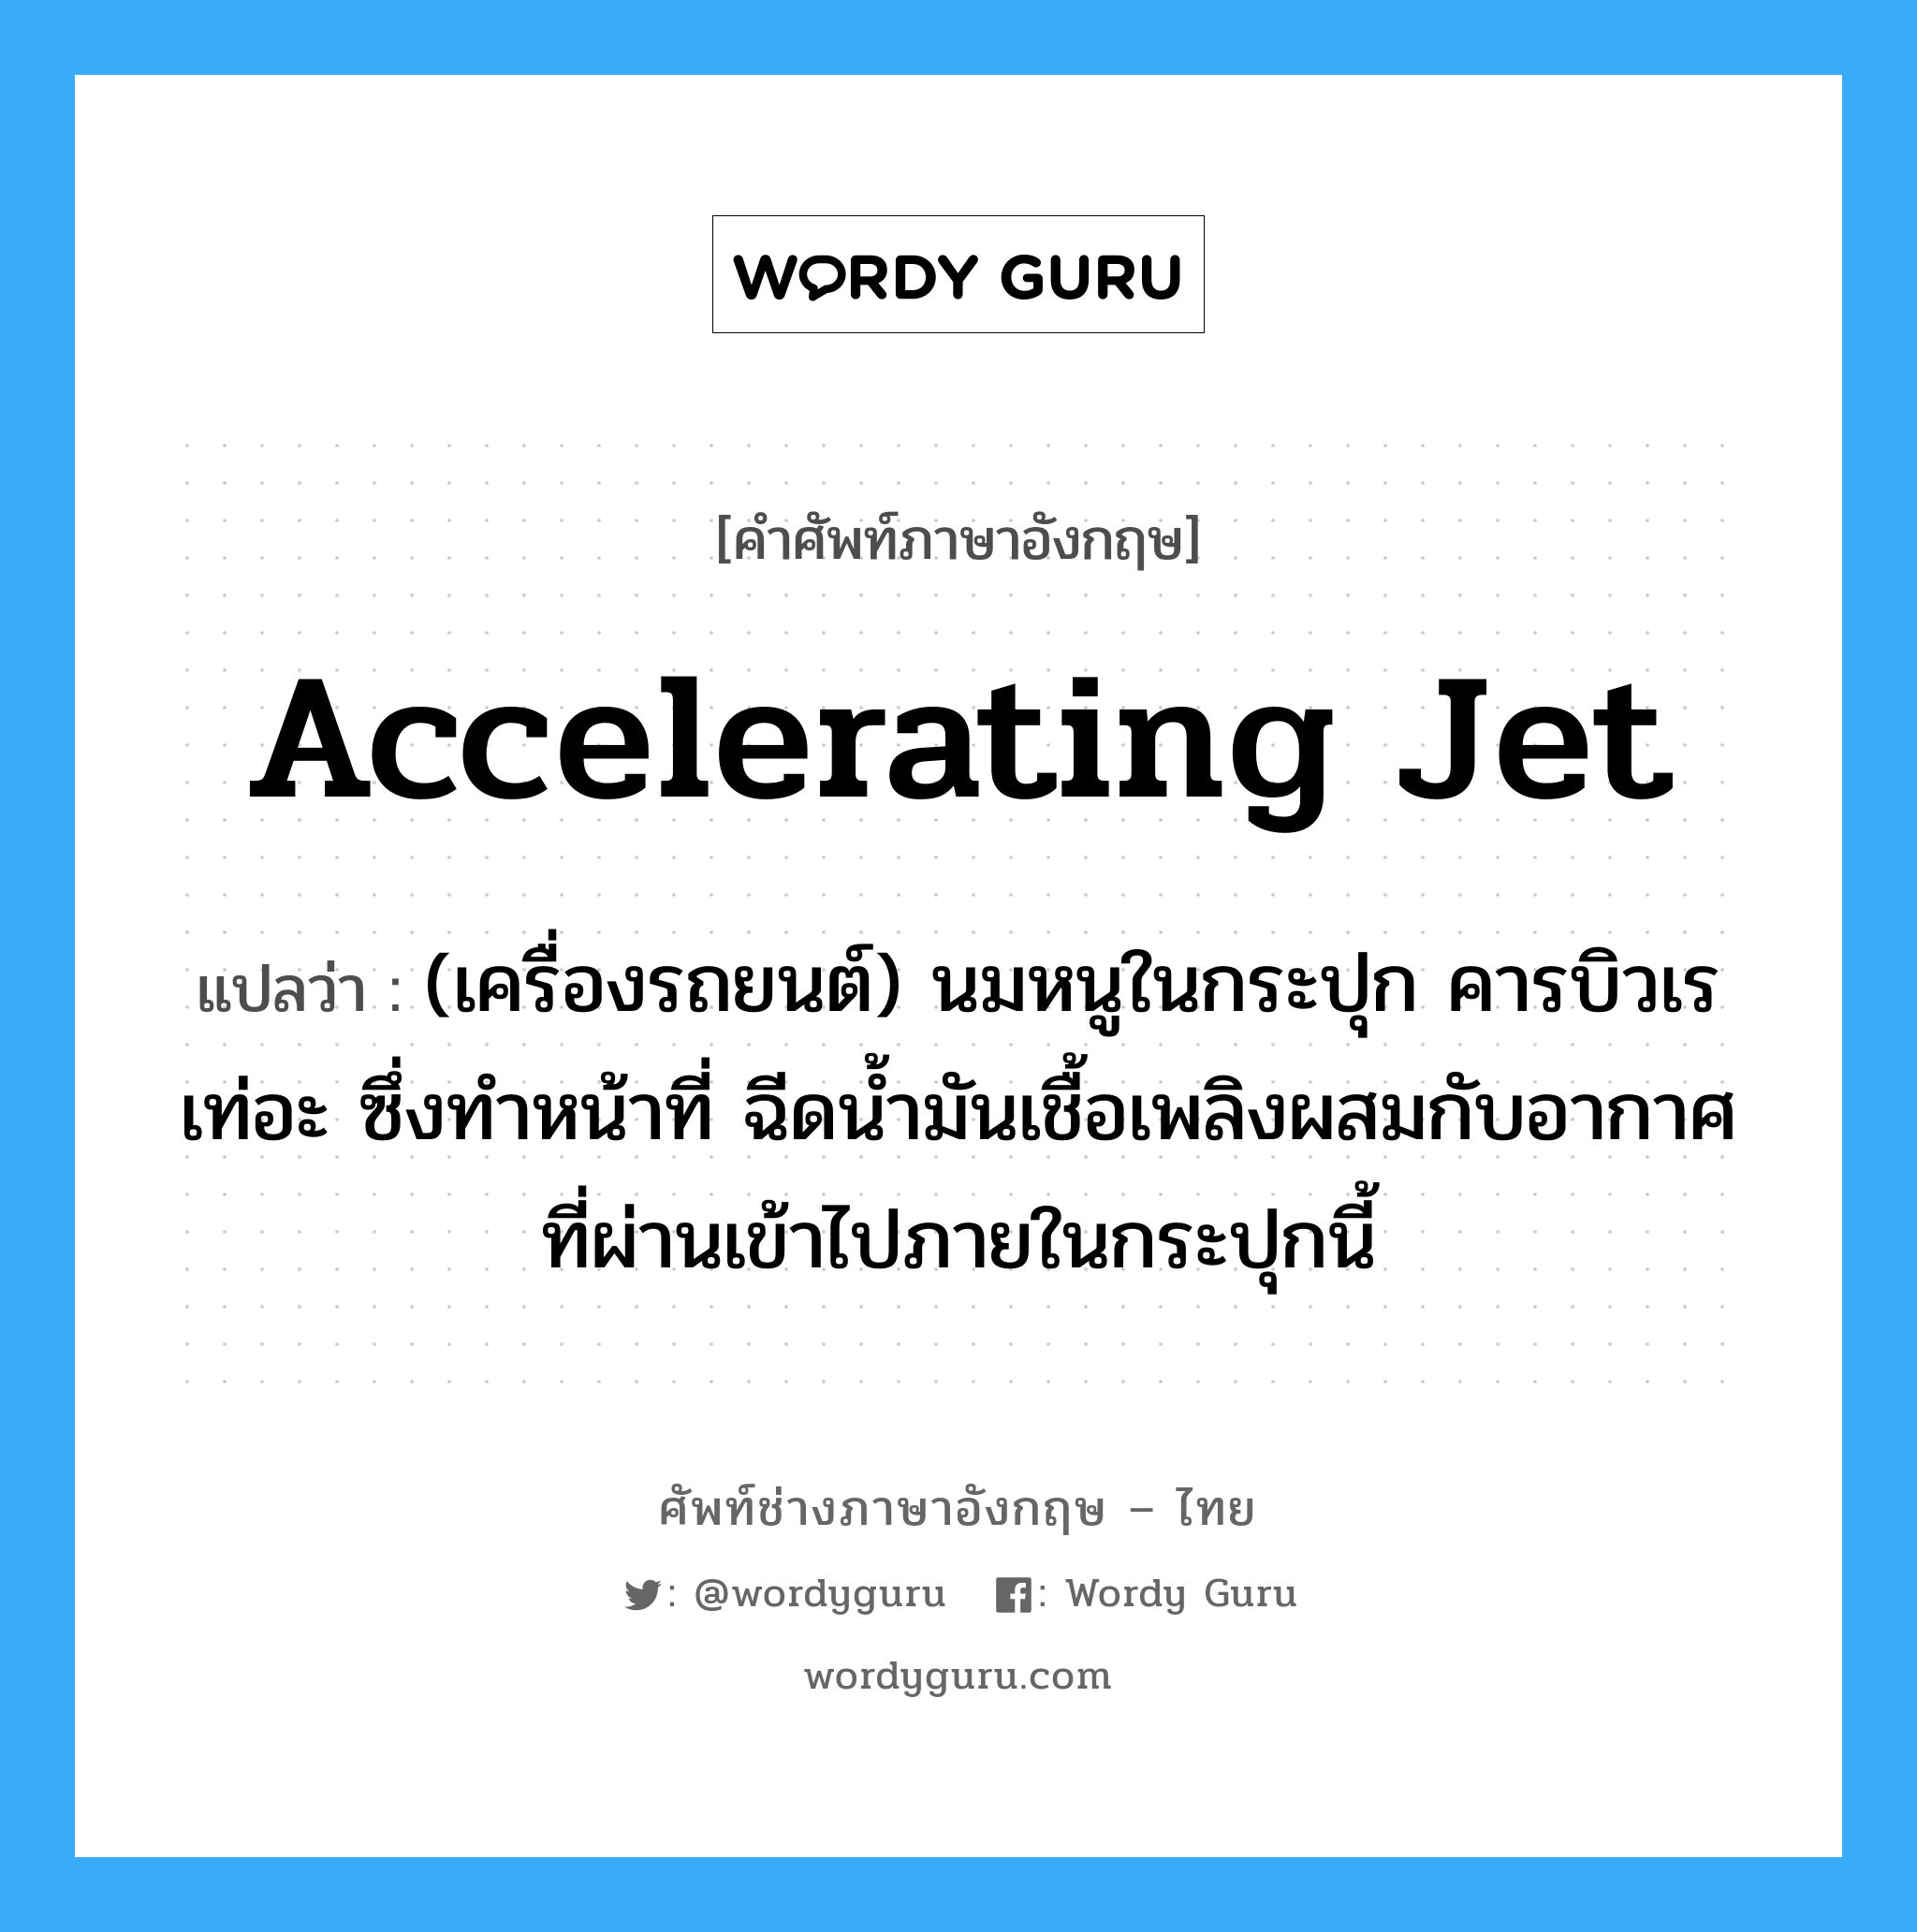 accelerating jet แปลว่า?, คำศัพท์ช่างภาษาอังกฤษ - ไทย accelerating jet คำศัพท์ภาษาอังกฤษ accelerating jet แปลว่า (เครื่องรถยนต์) นมหนูในกระปุก คารบิวเรเท่อะ ซึ่งทำหน้าที่ ฉีดน้ำมันเชื้อเพลิงผสมกับอากาศที่ผ่านเข้าไปภายในกระปุกนี้